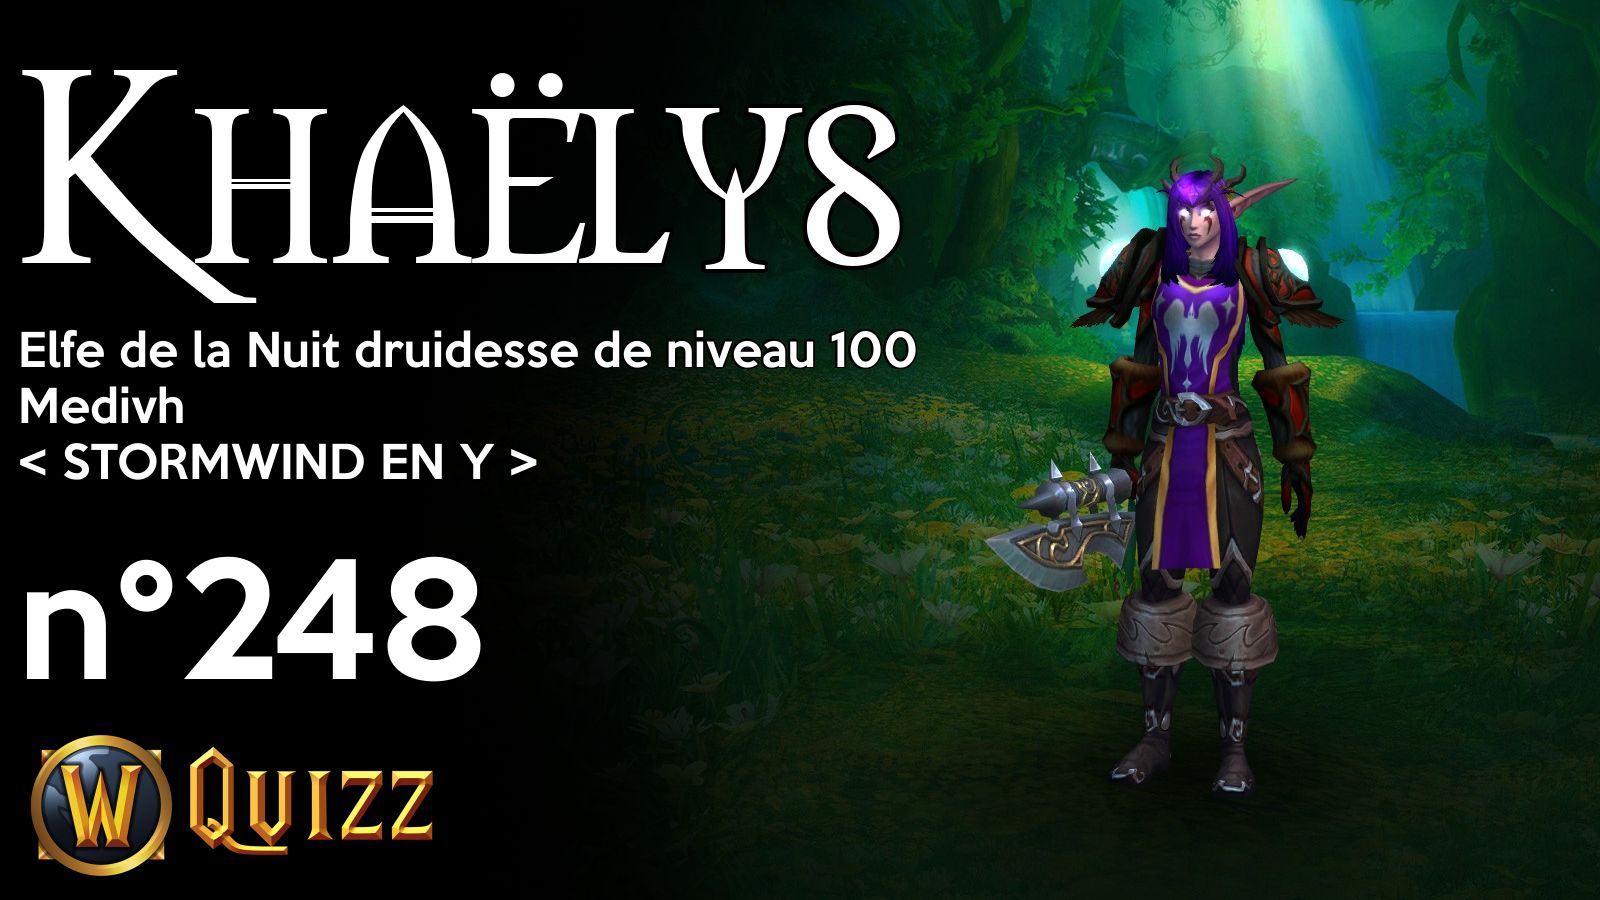 Khaëlys, Elfe de la Nuit druidesse de niveau 100, Medivh